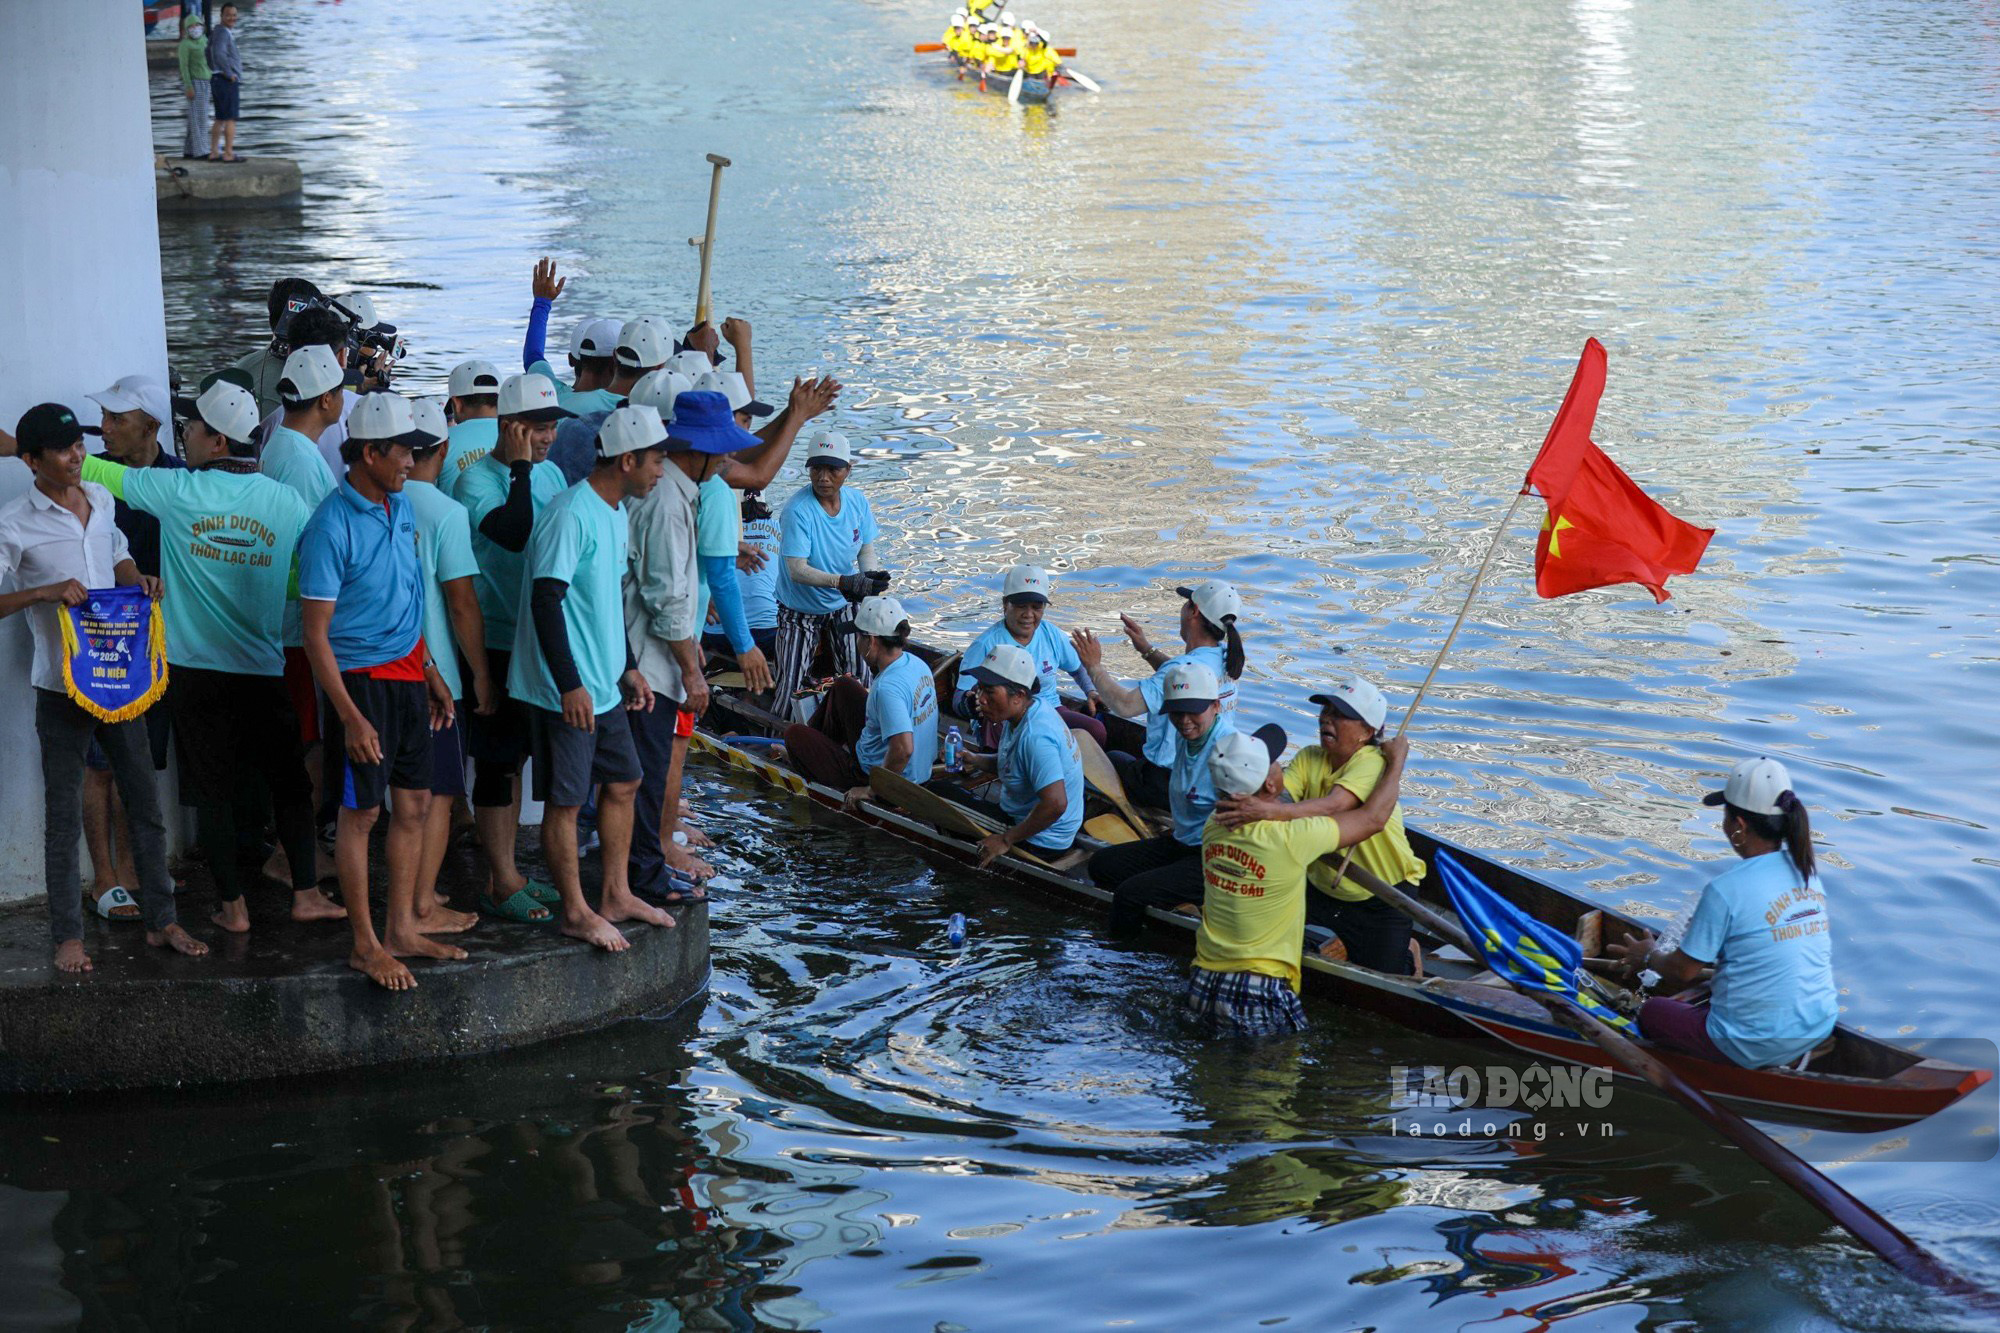 Một đội đua vừa hoàn thành chặn đua với thứ hạng đứng đầu, người cổ vũ ào ra ăn mừng khi thuyền cập bờ.